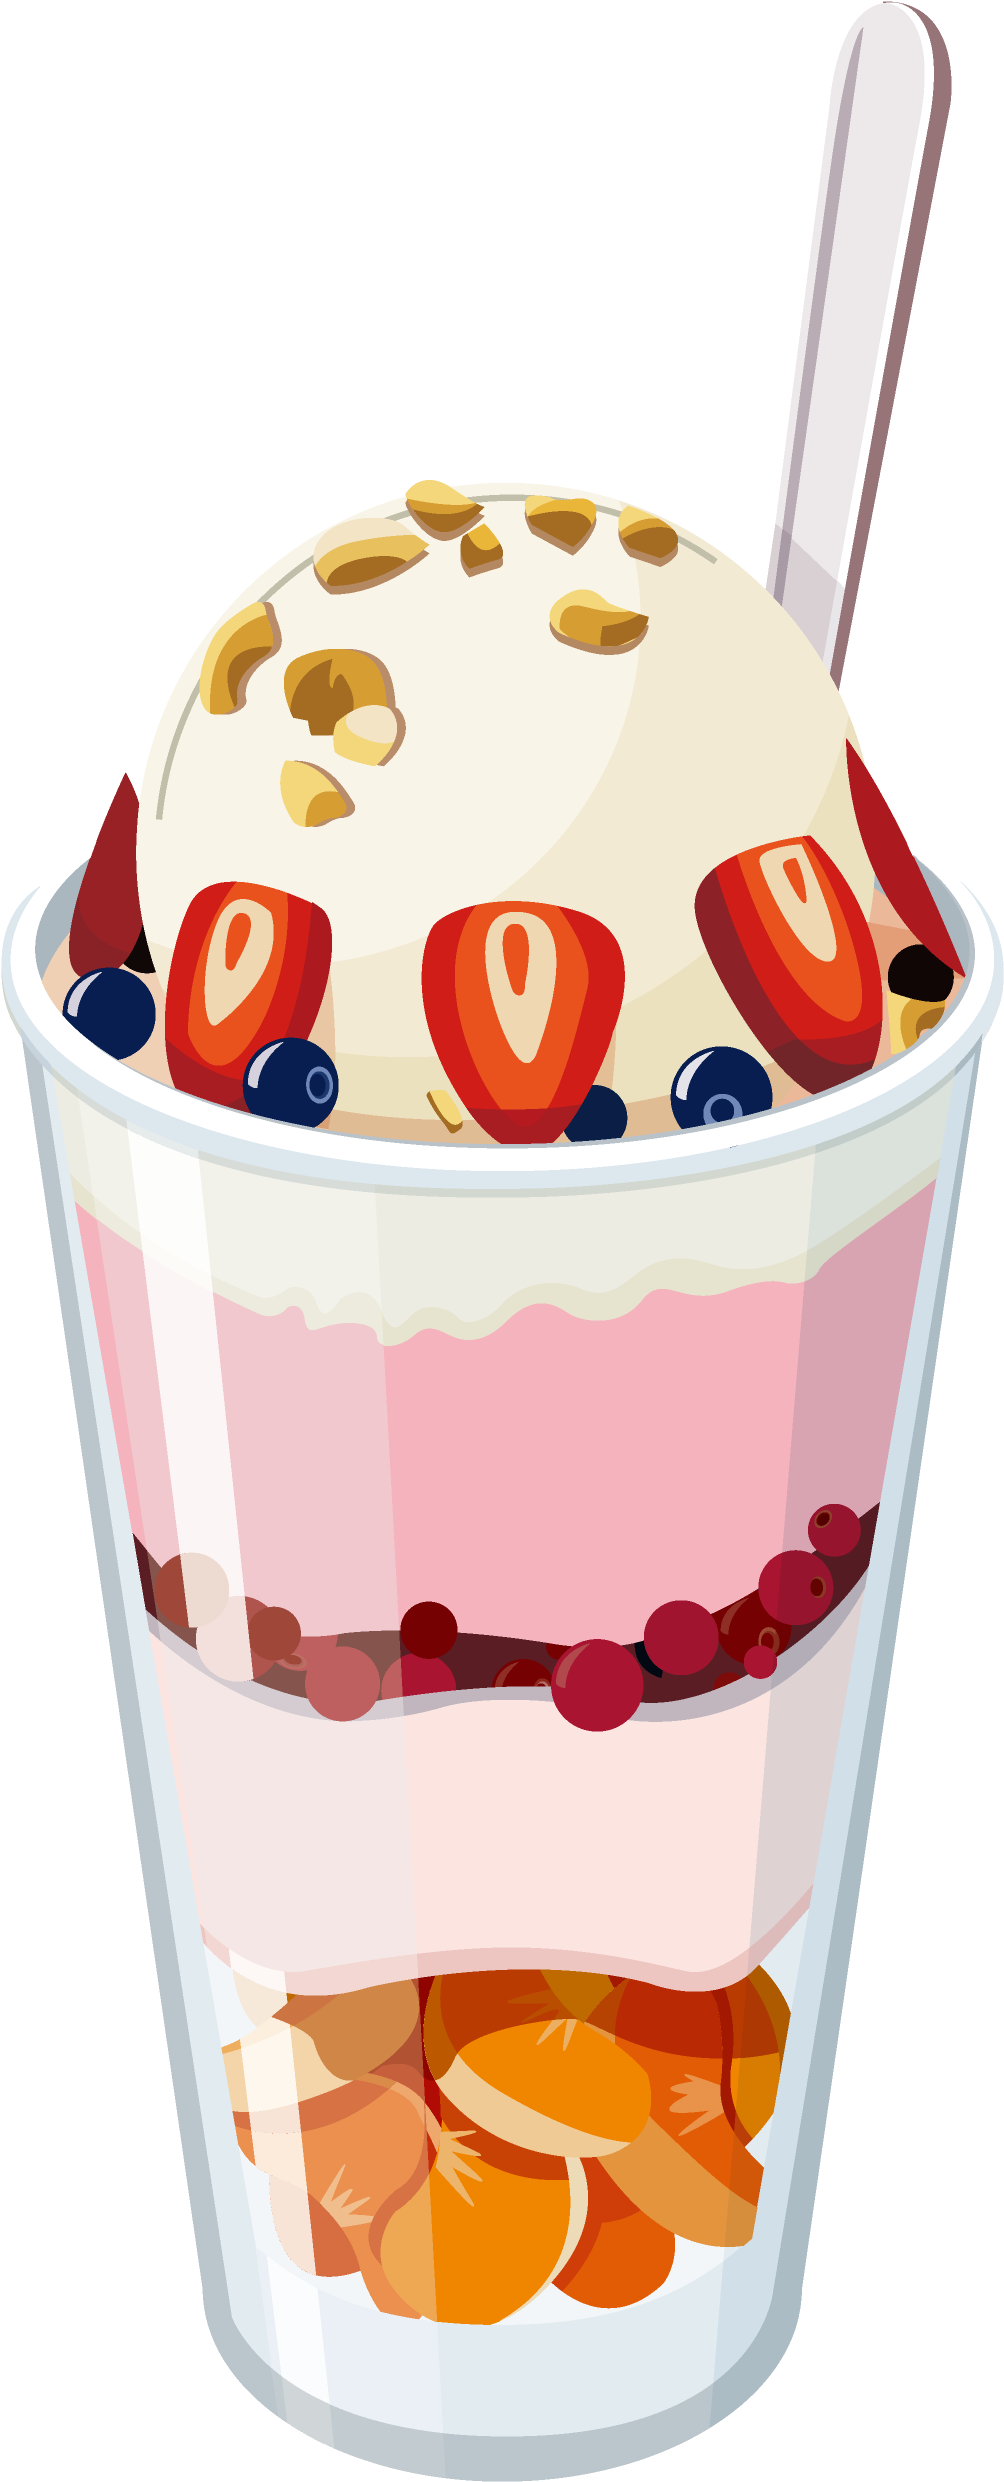 冰淇淋雪糕 - Drawing Of Ice Cream Sunde (1560x2678)